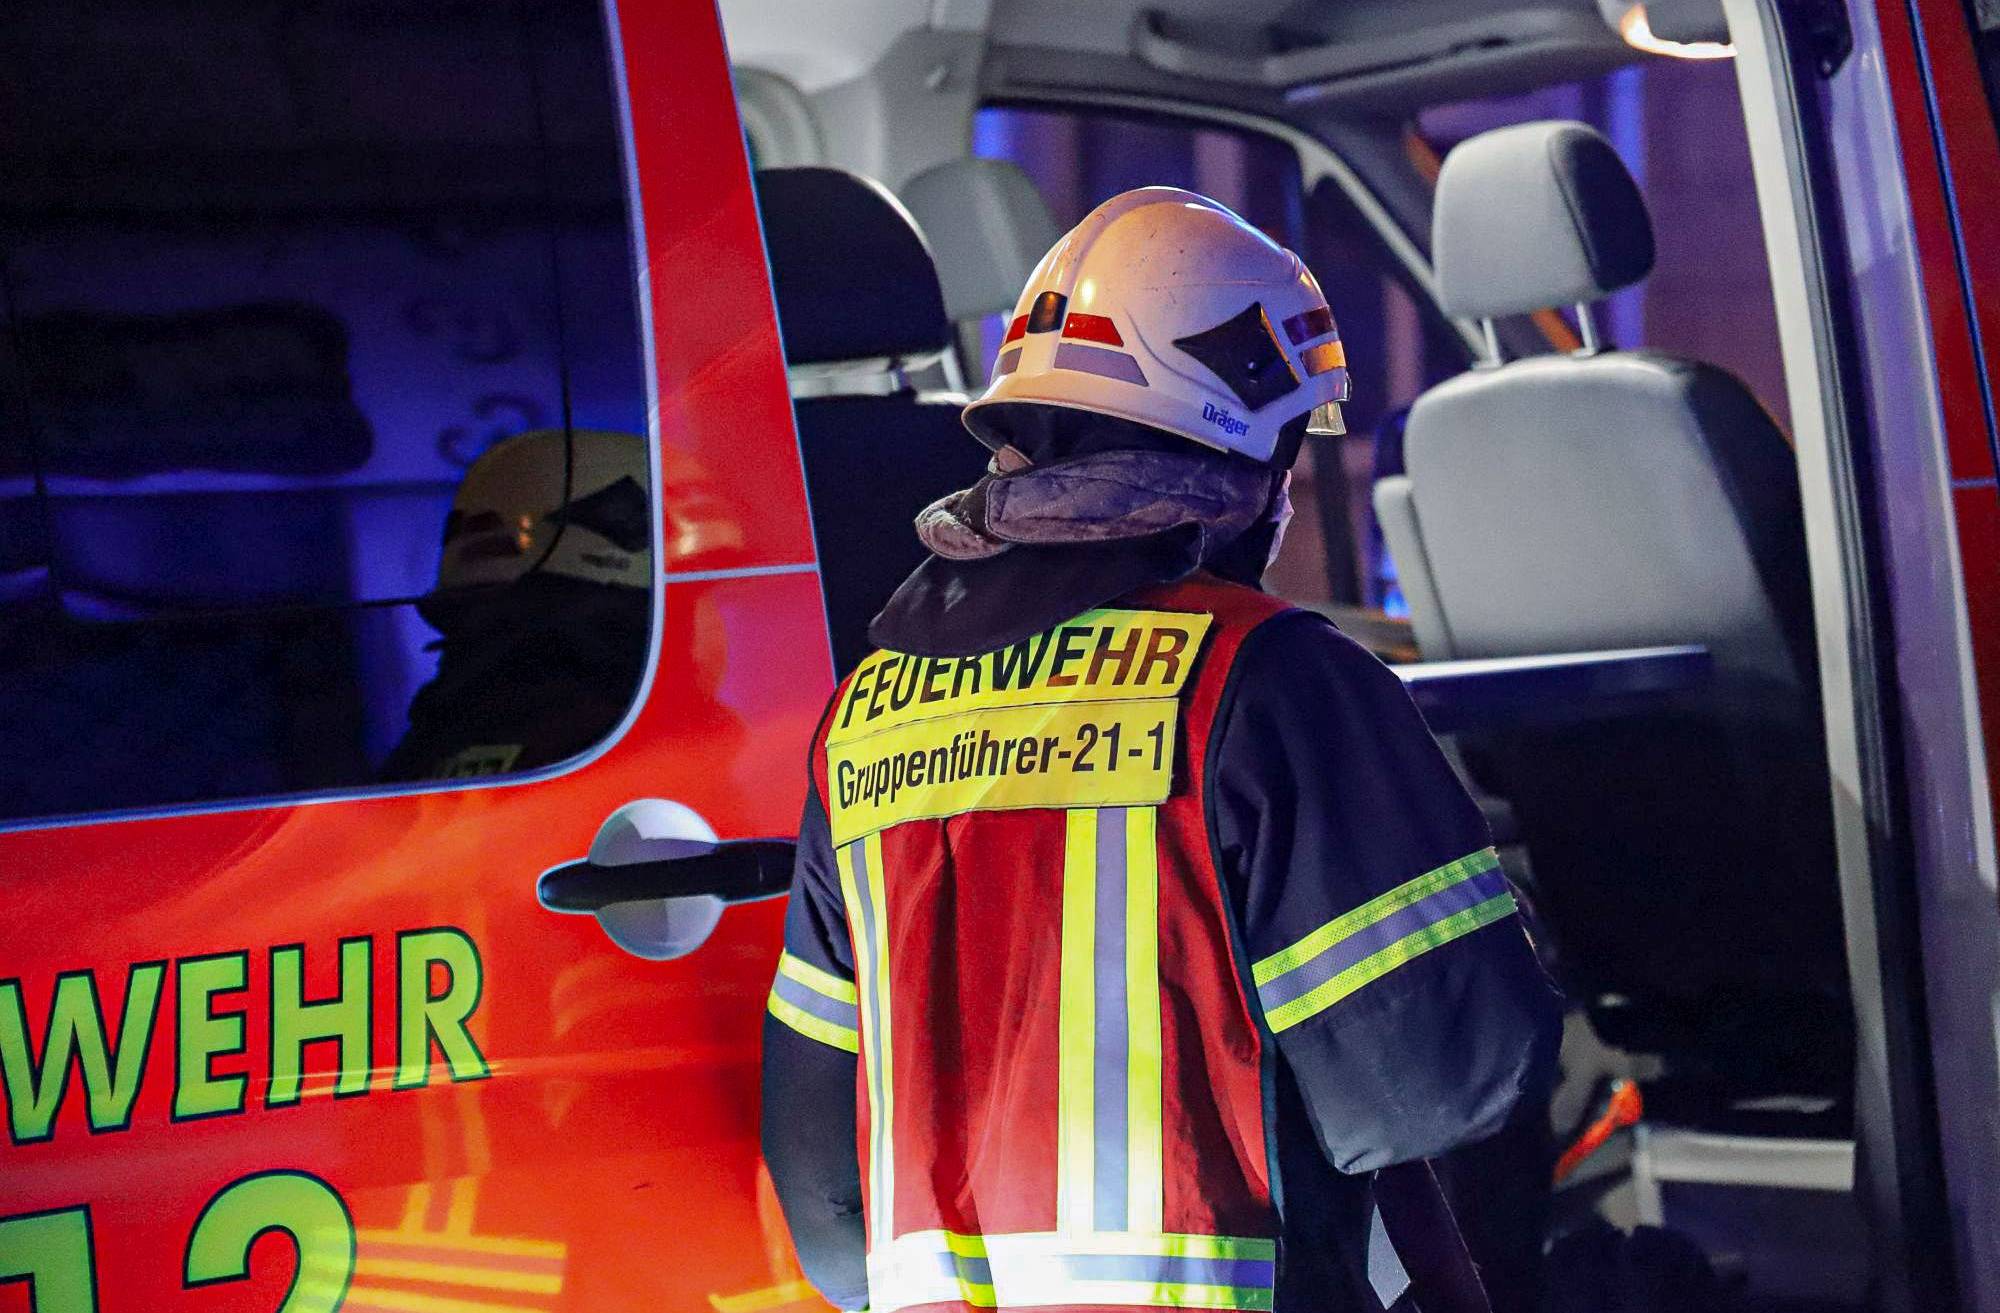 Toter bei Wohnungsbrand in Elberfeld entdeckt